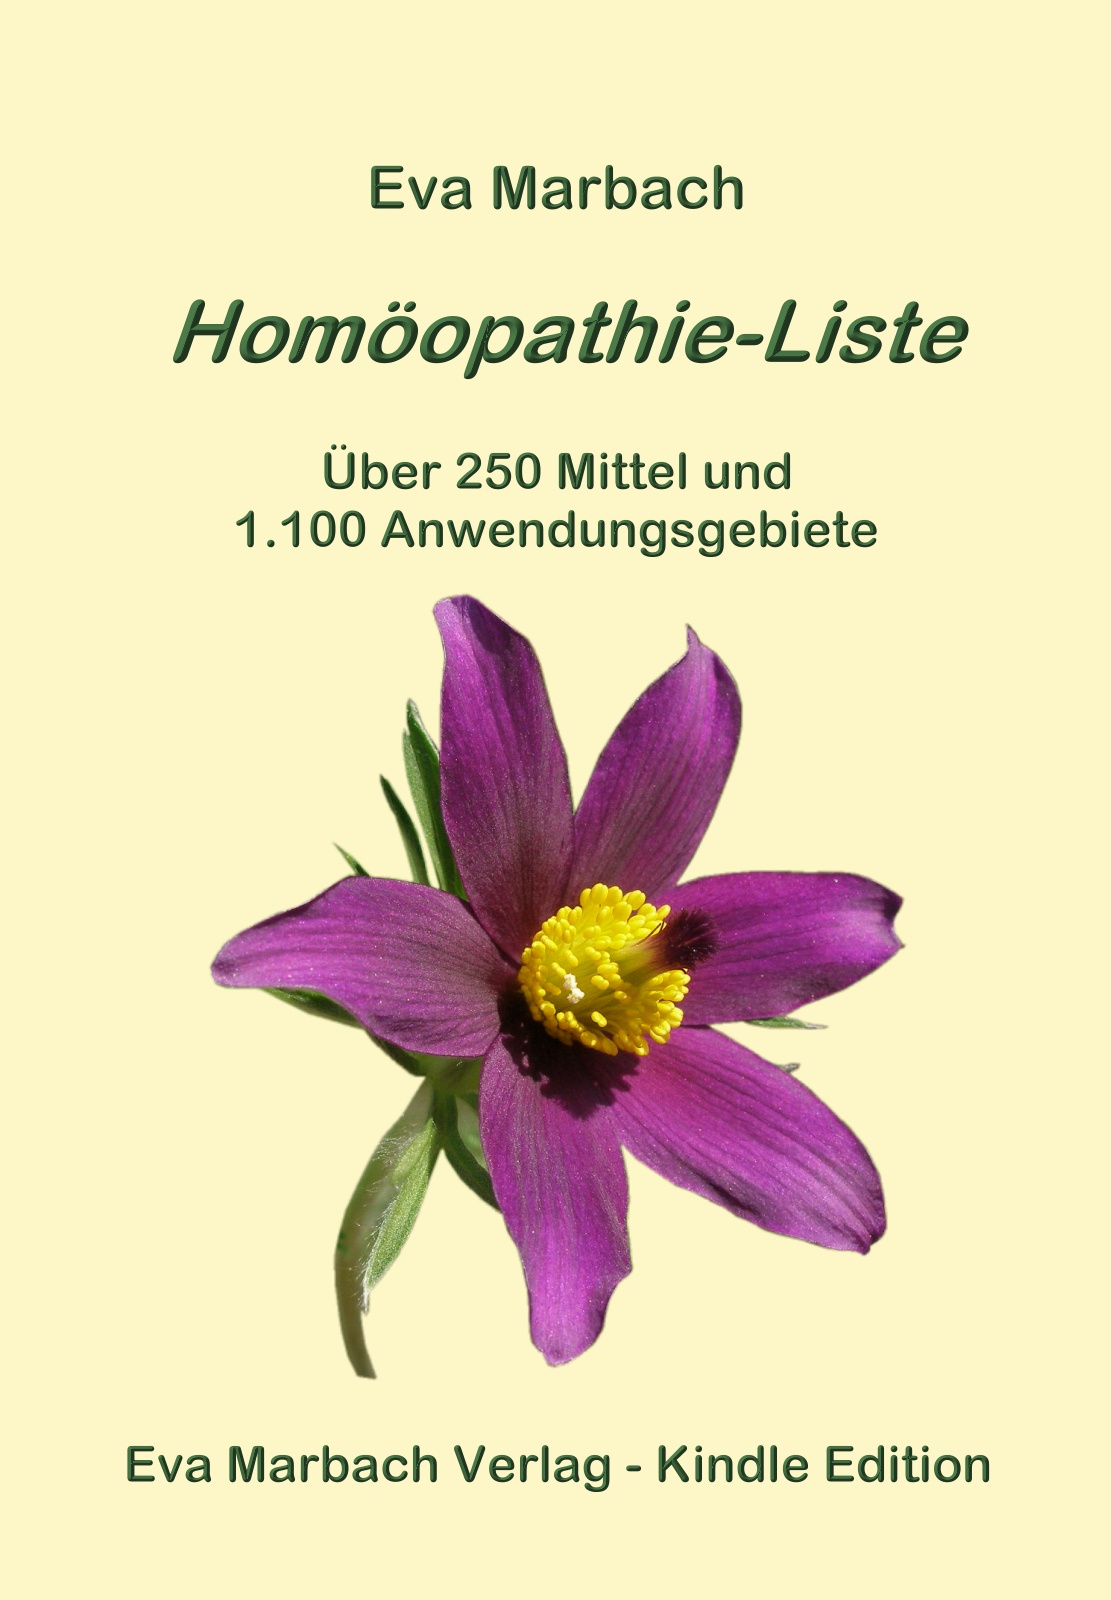 Homopathie-Liste E-Book